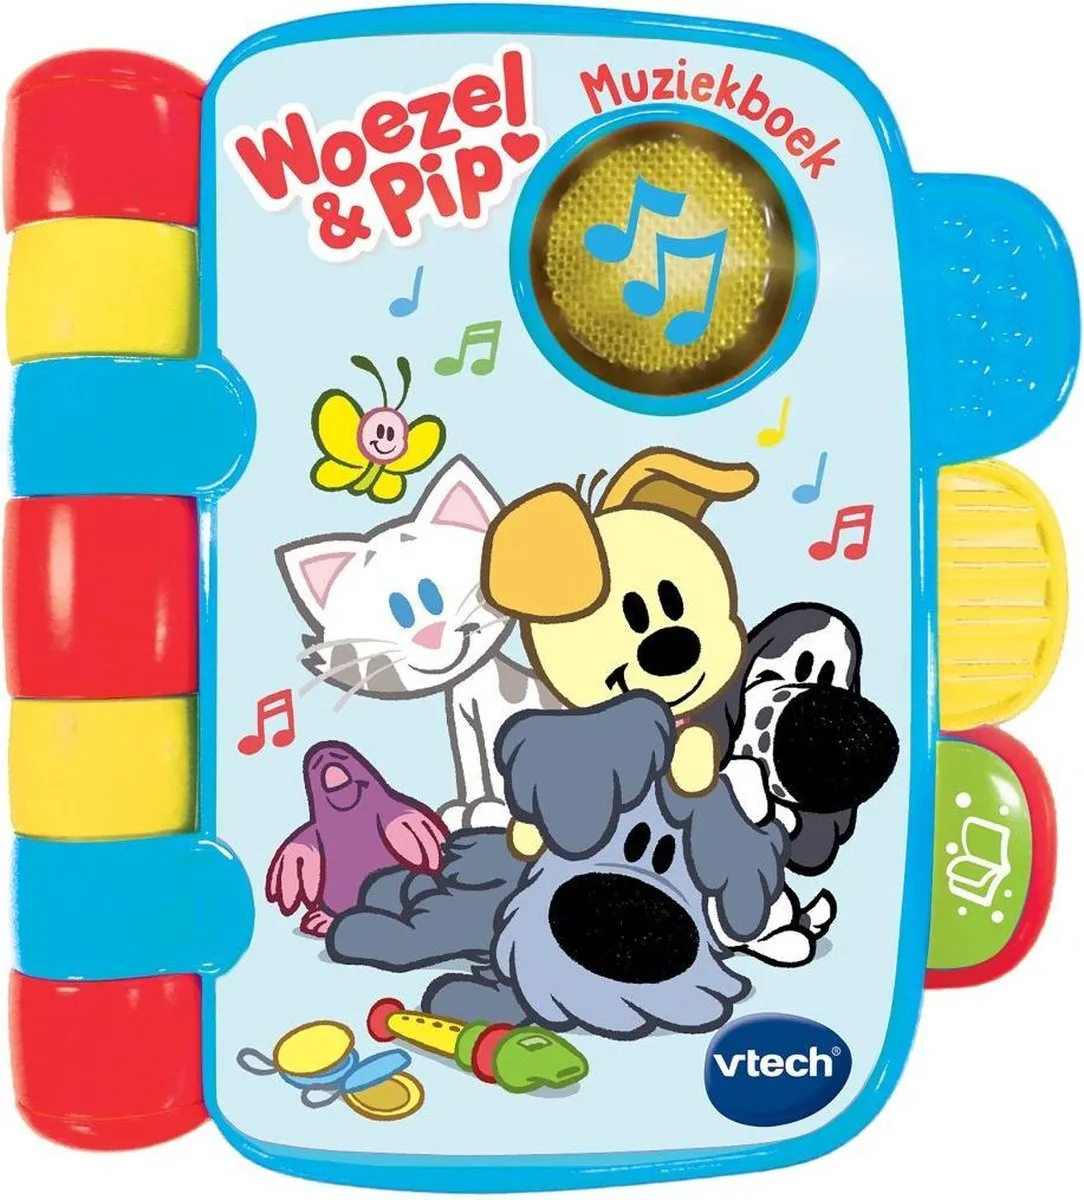 Vtech Baby Woezel & Pip Muziekboekje - Educatief Babyspeelgoed - 6 tot 36 Maanden speelgoed